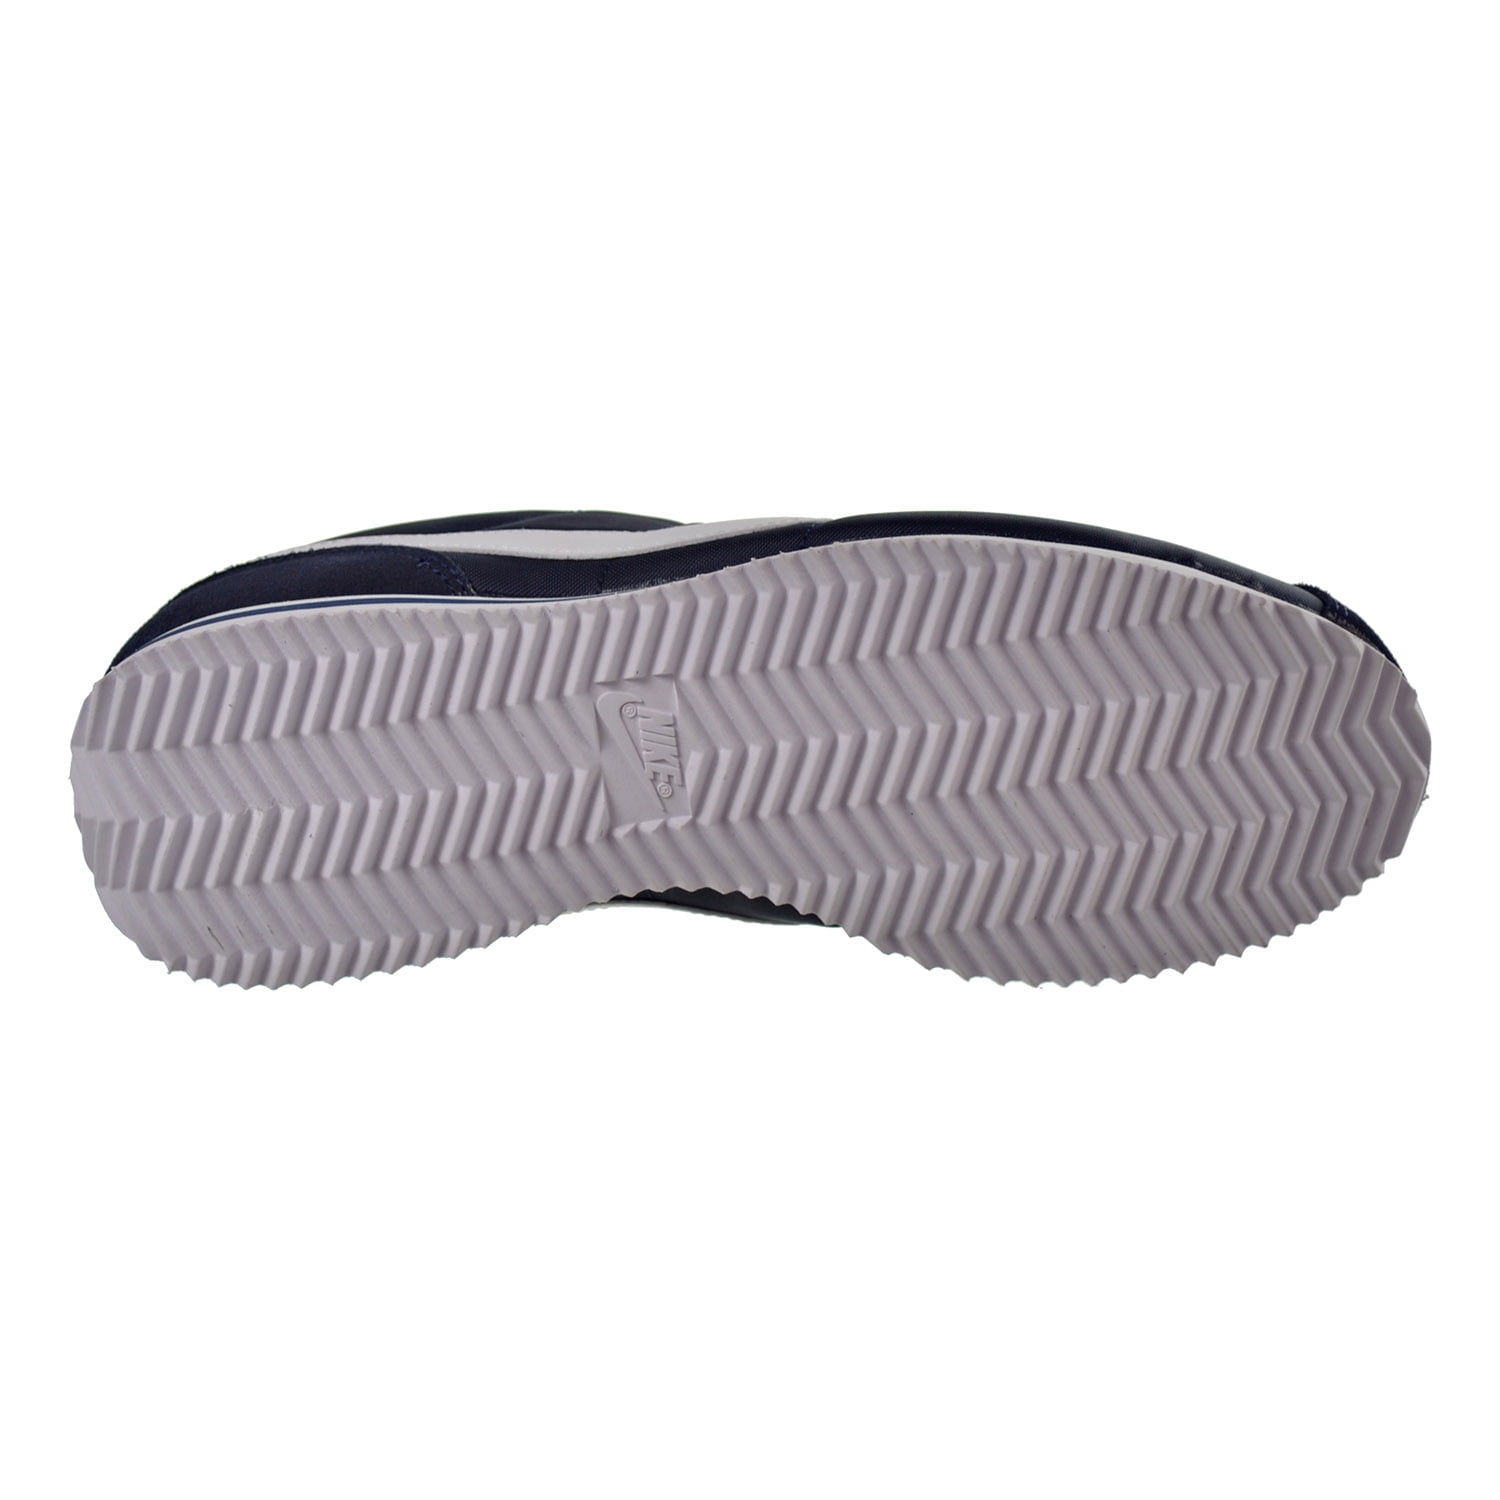 Nike Cortez Basic Nylon Men's Shoes Obsidian/White/Metallic Silver 